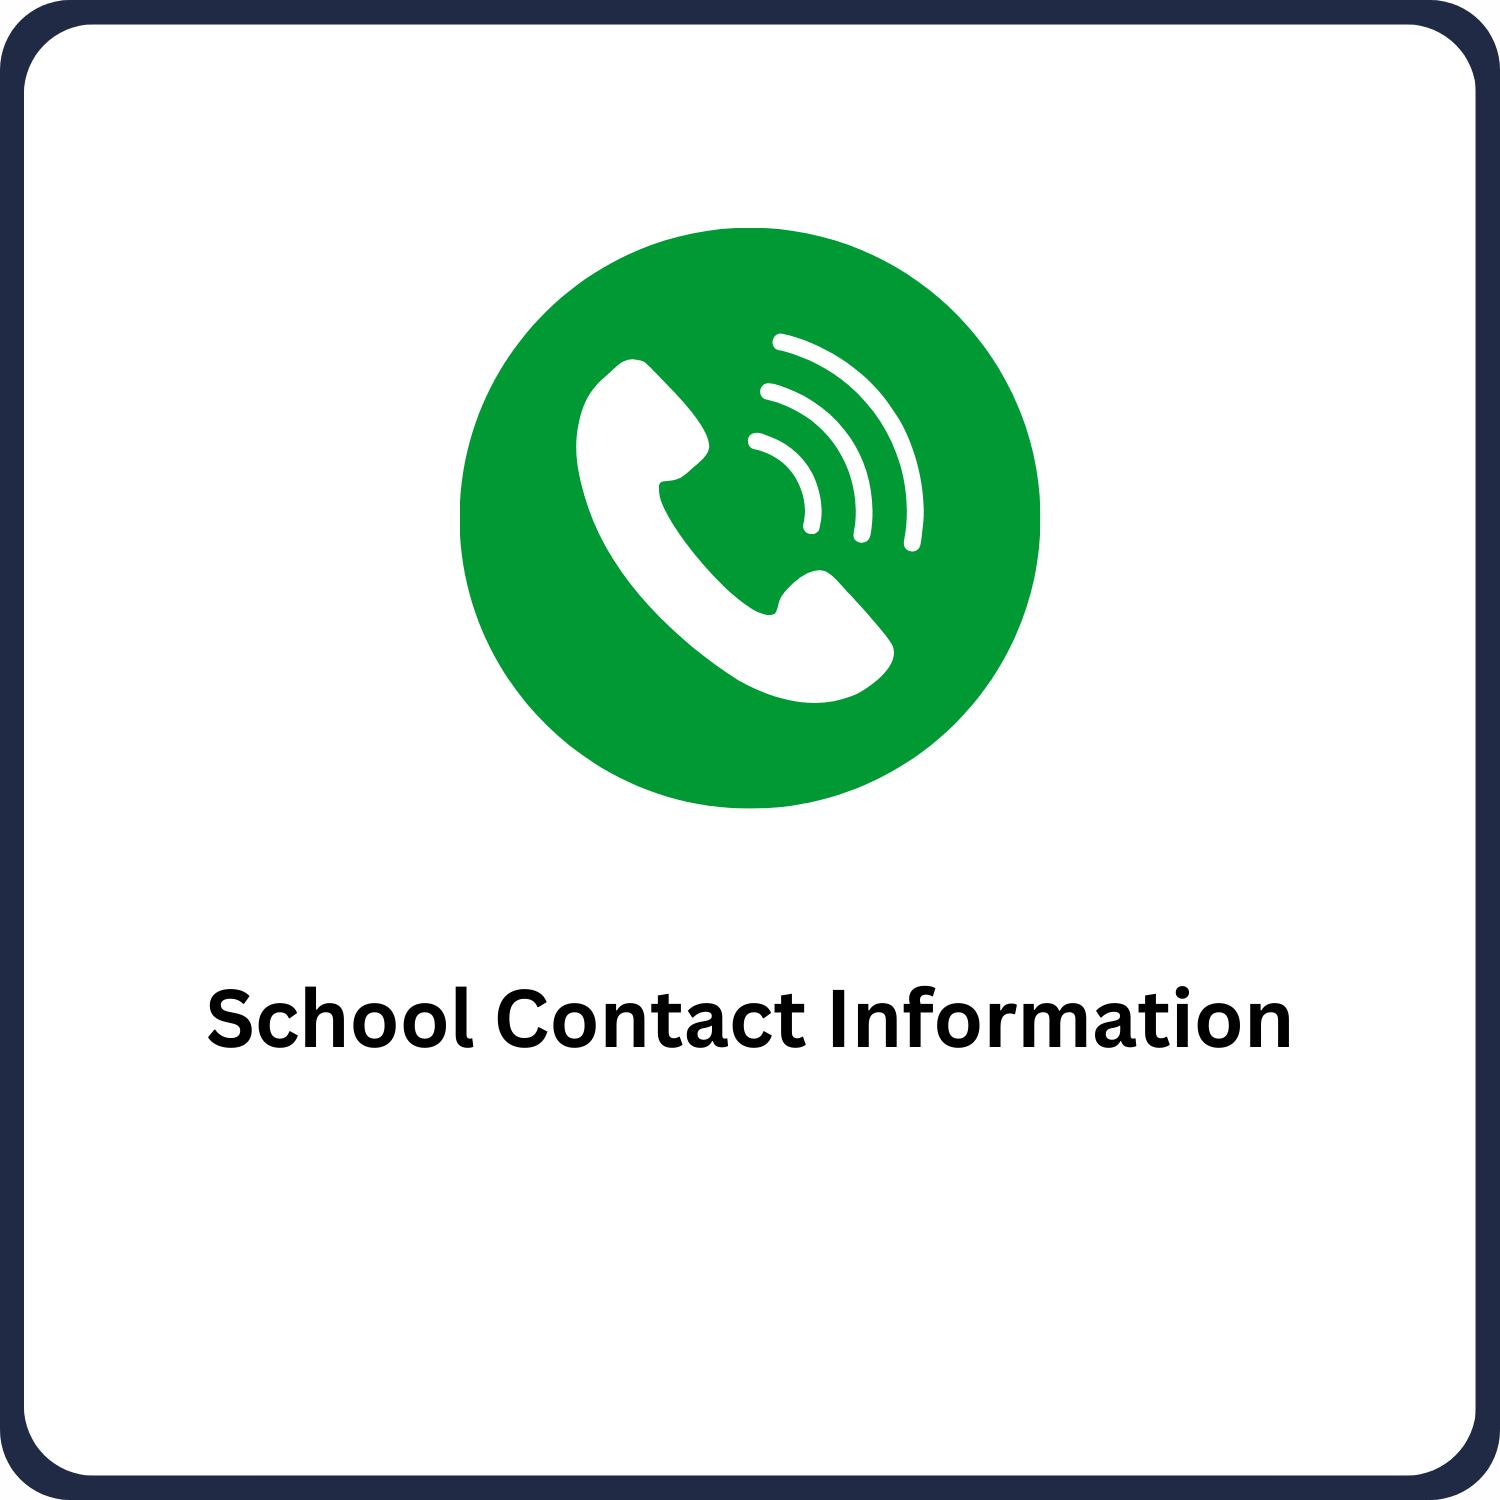 School Contact Information